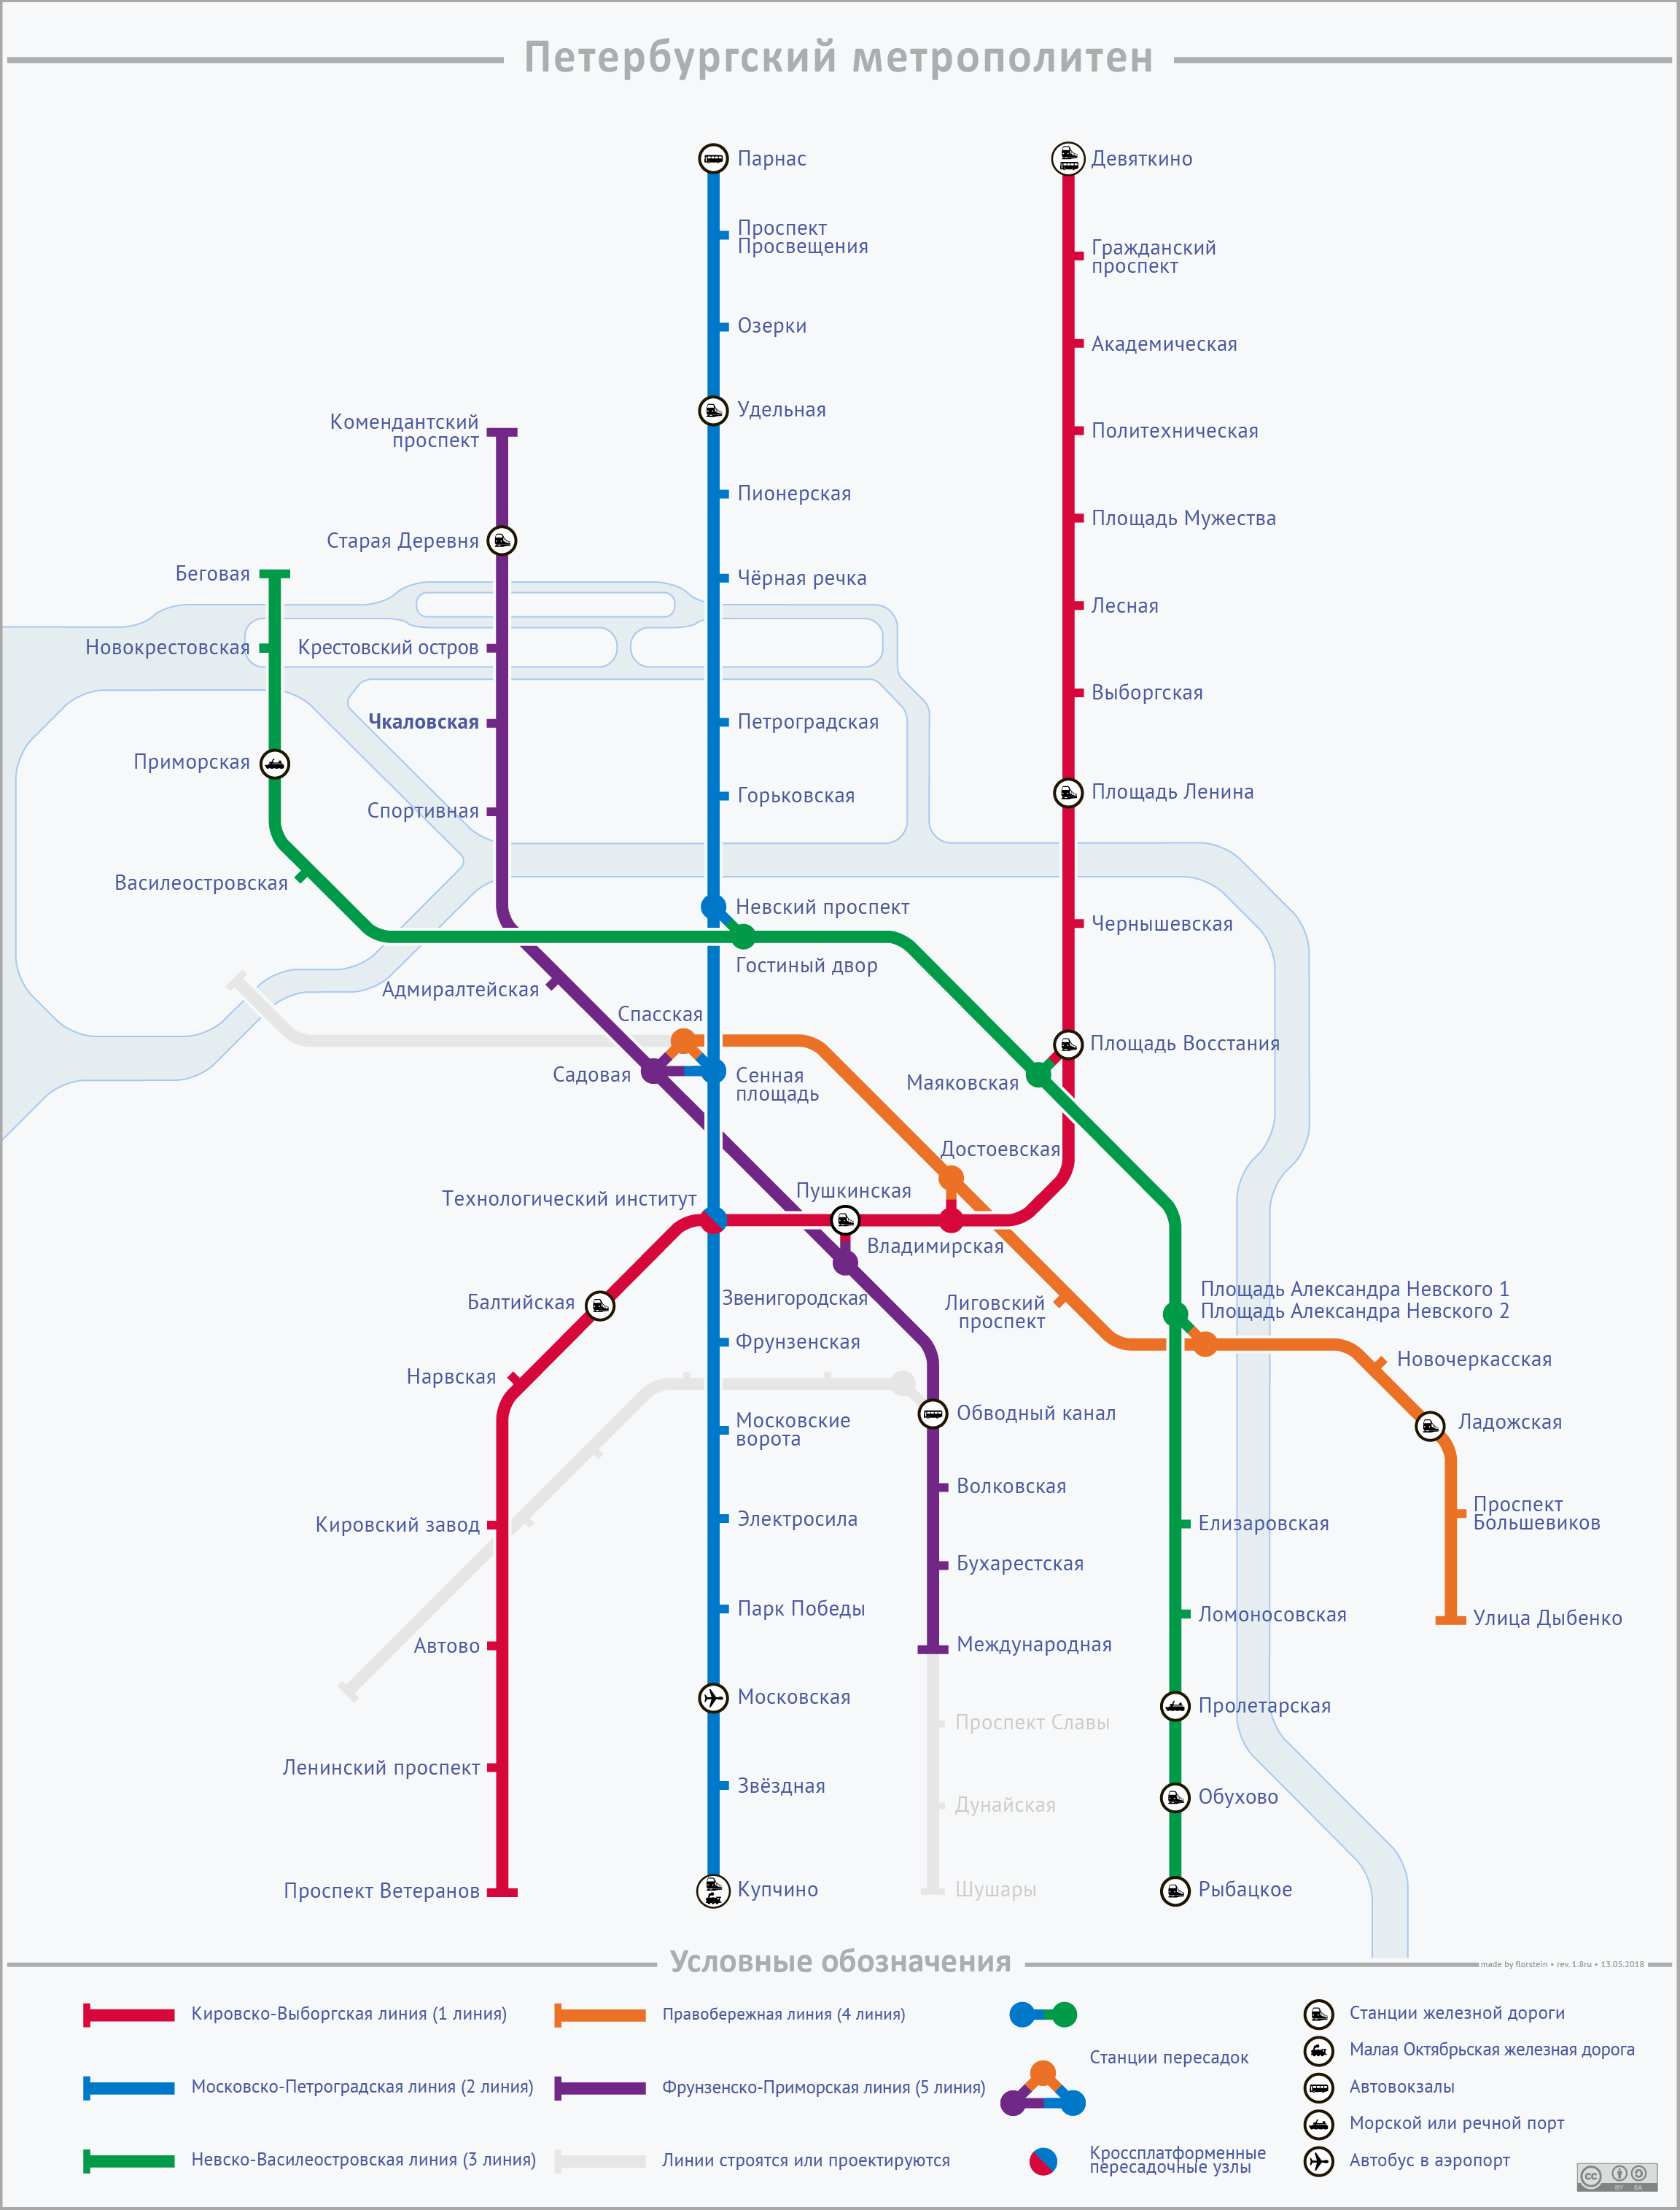 聖彼德斯堡 — Metro — Maps